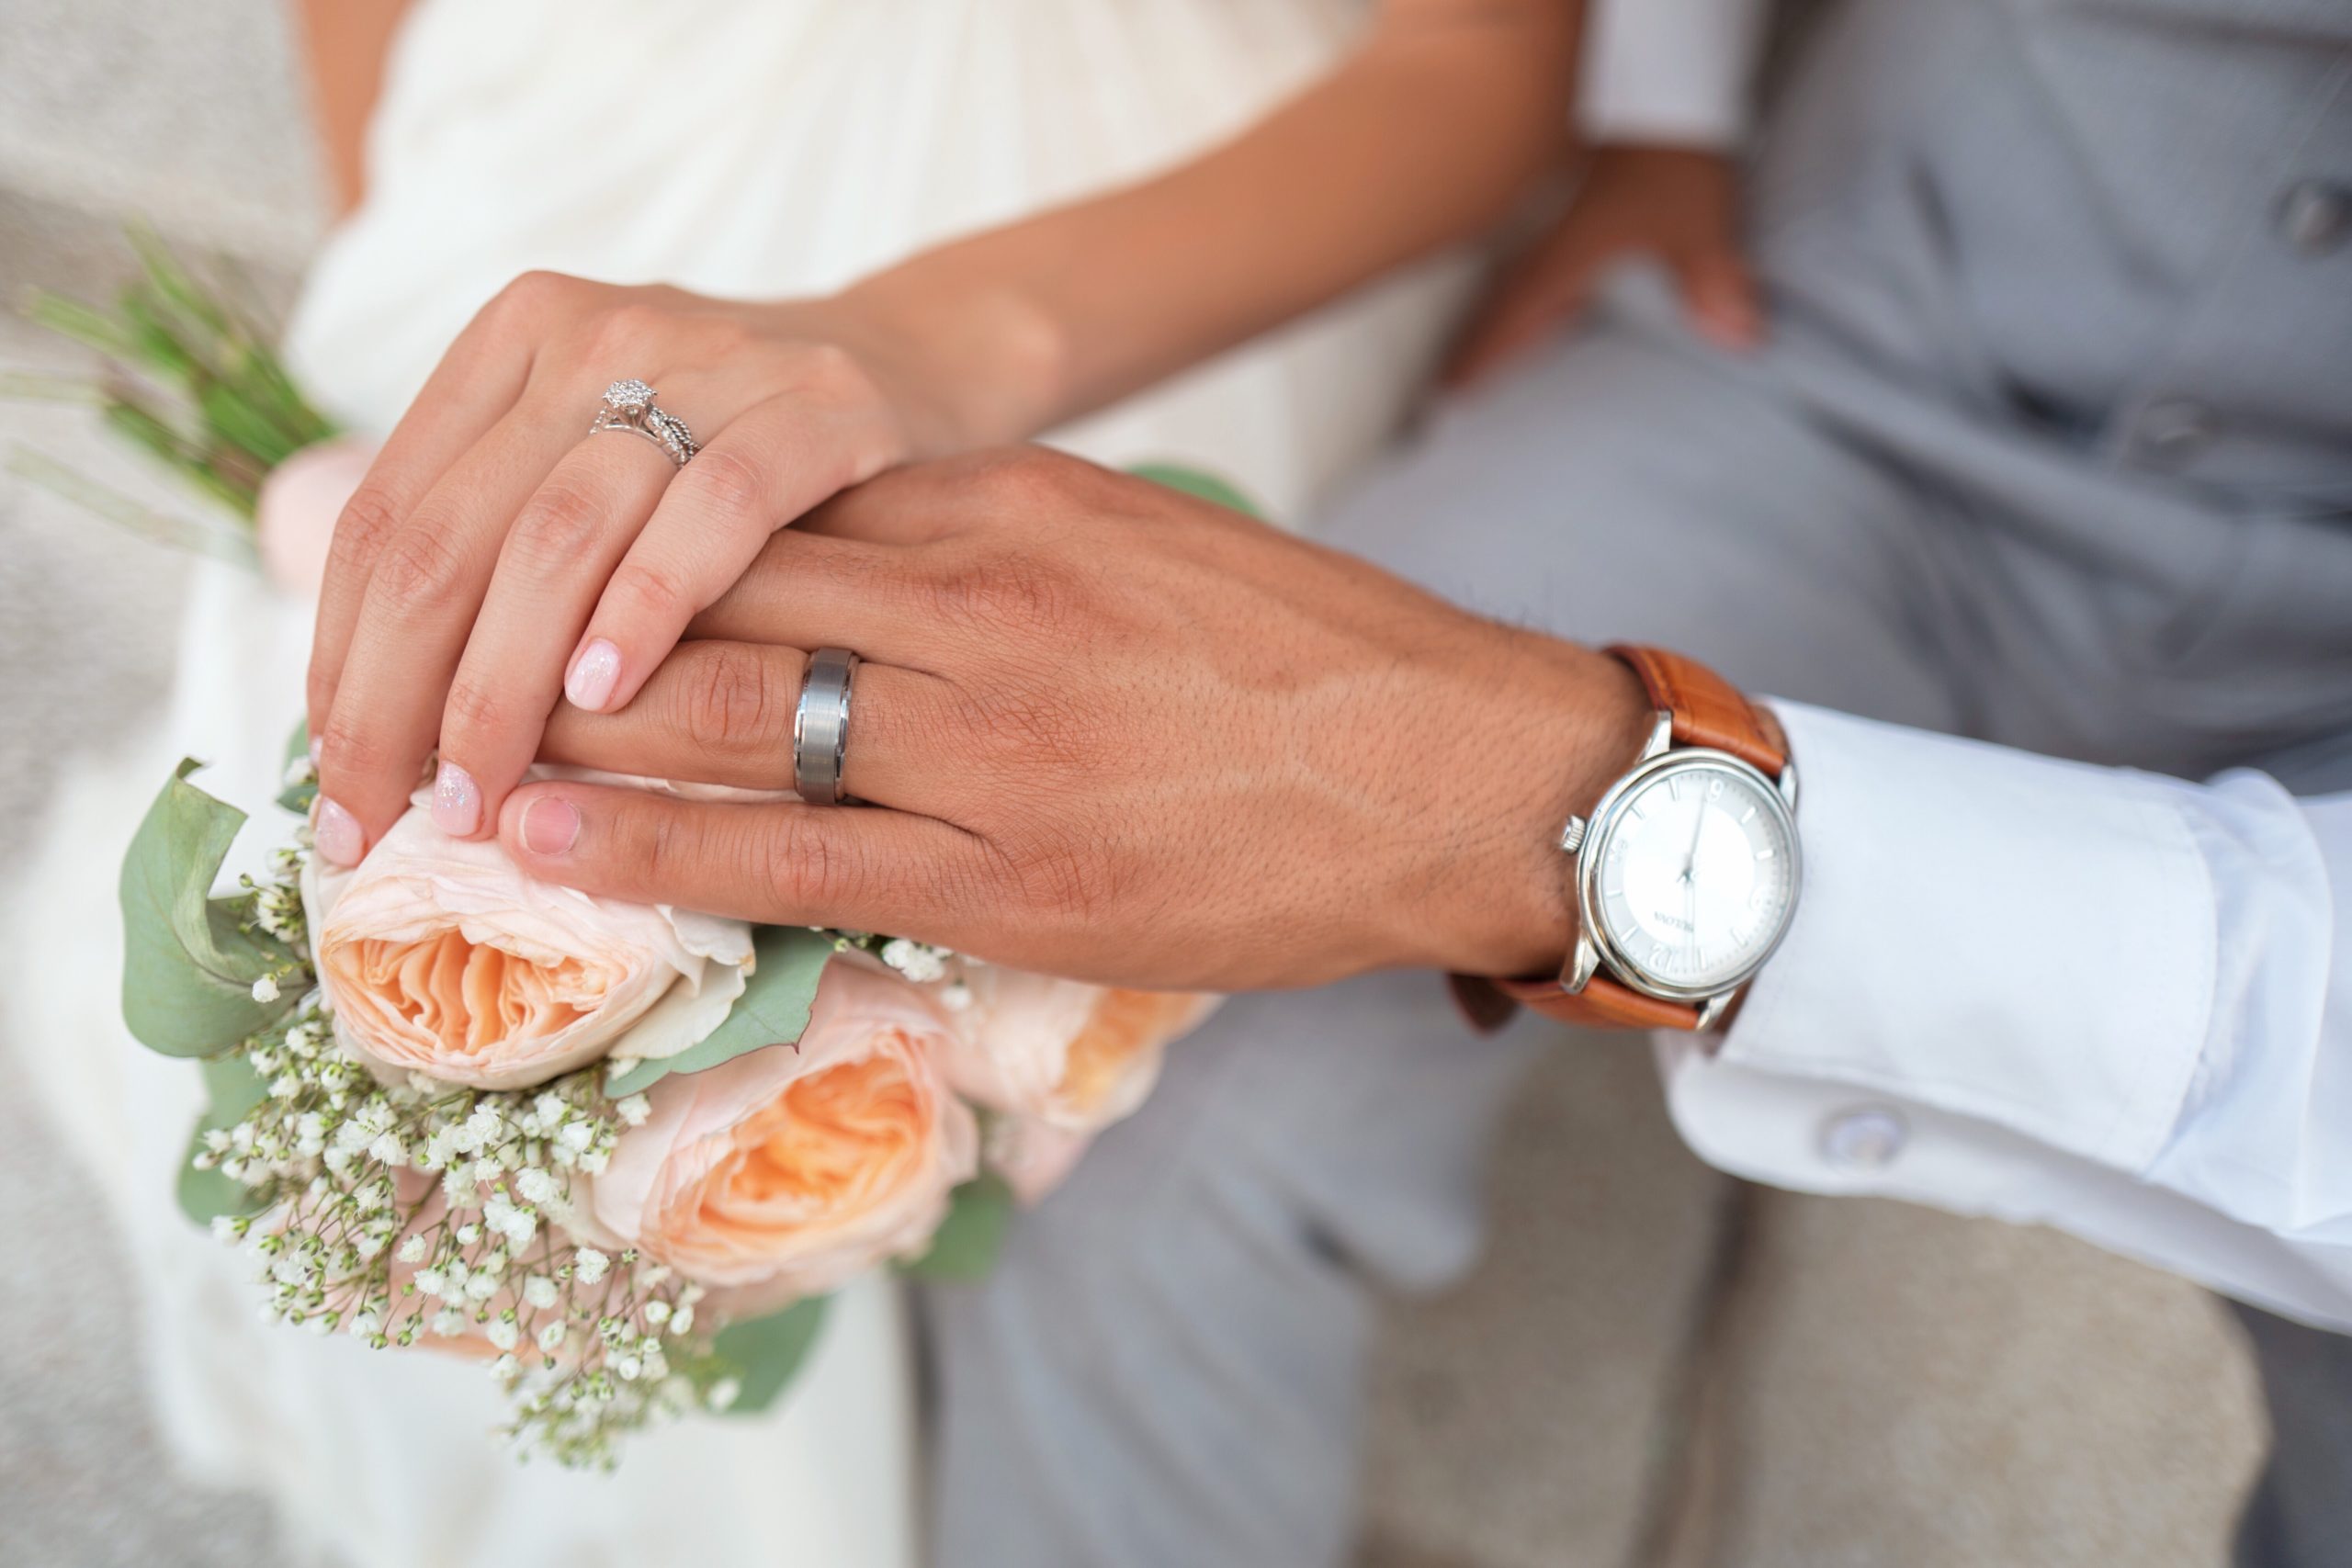 寿退社後の再就職が難しい理由を考えずに結婚した夫婦の手